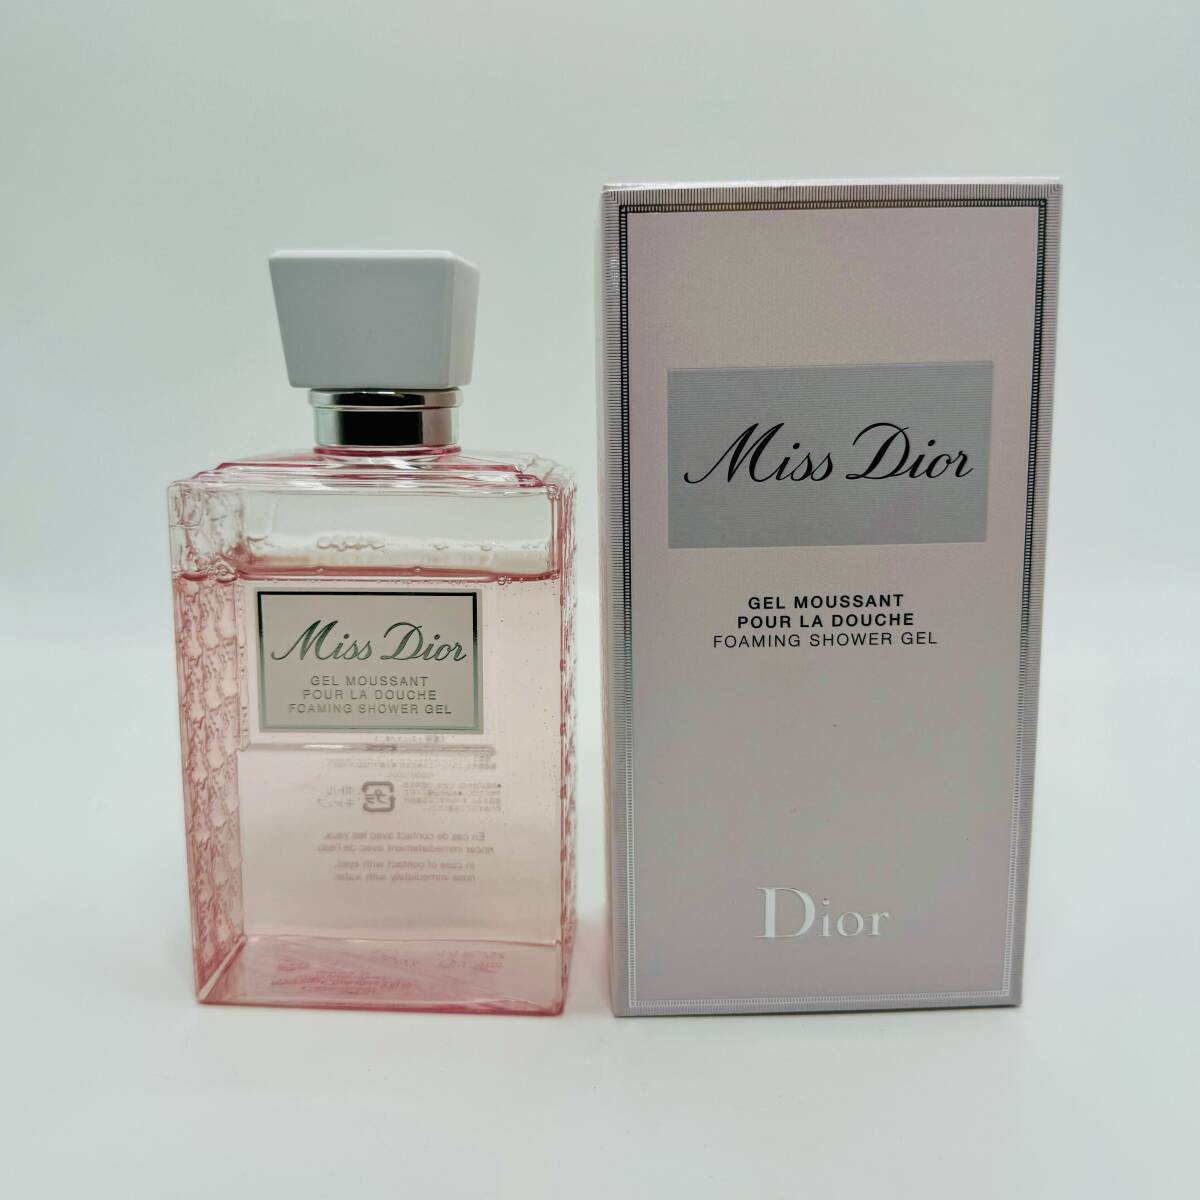 Miss Dior 5点セット まとめて EAU DE PARFUM 30ml シャワージェル 200ml キャンドル 85g バスパール 100g ローズ バスボム 15g 浴用化粧品の画像4